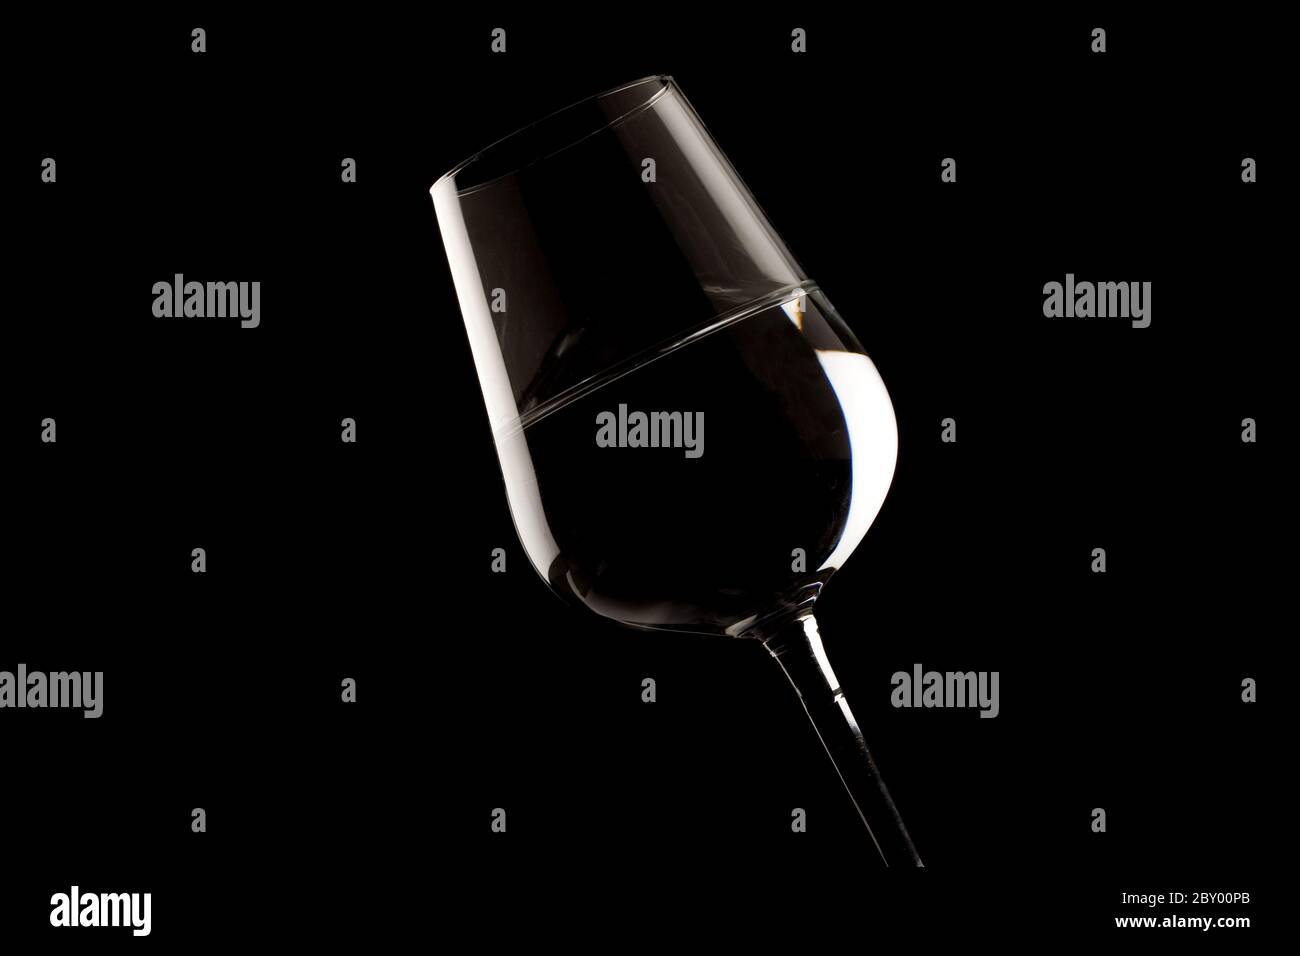 Bordi del bicchiere di vino evidenziati Foto Stock